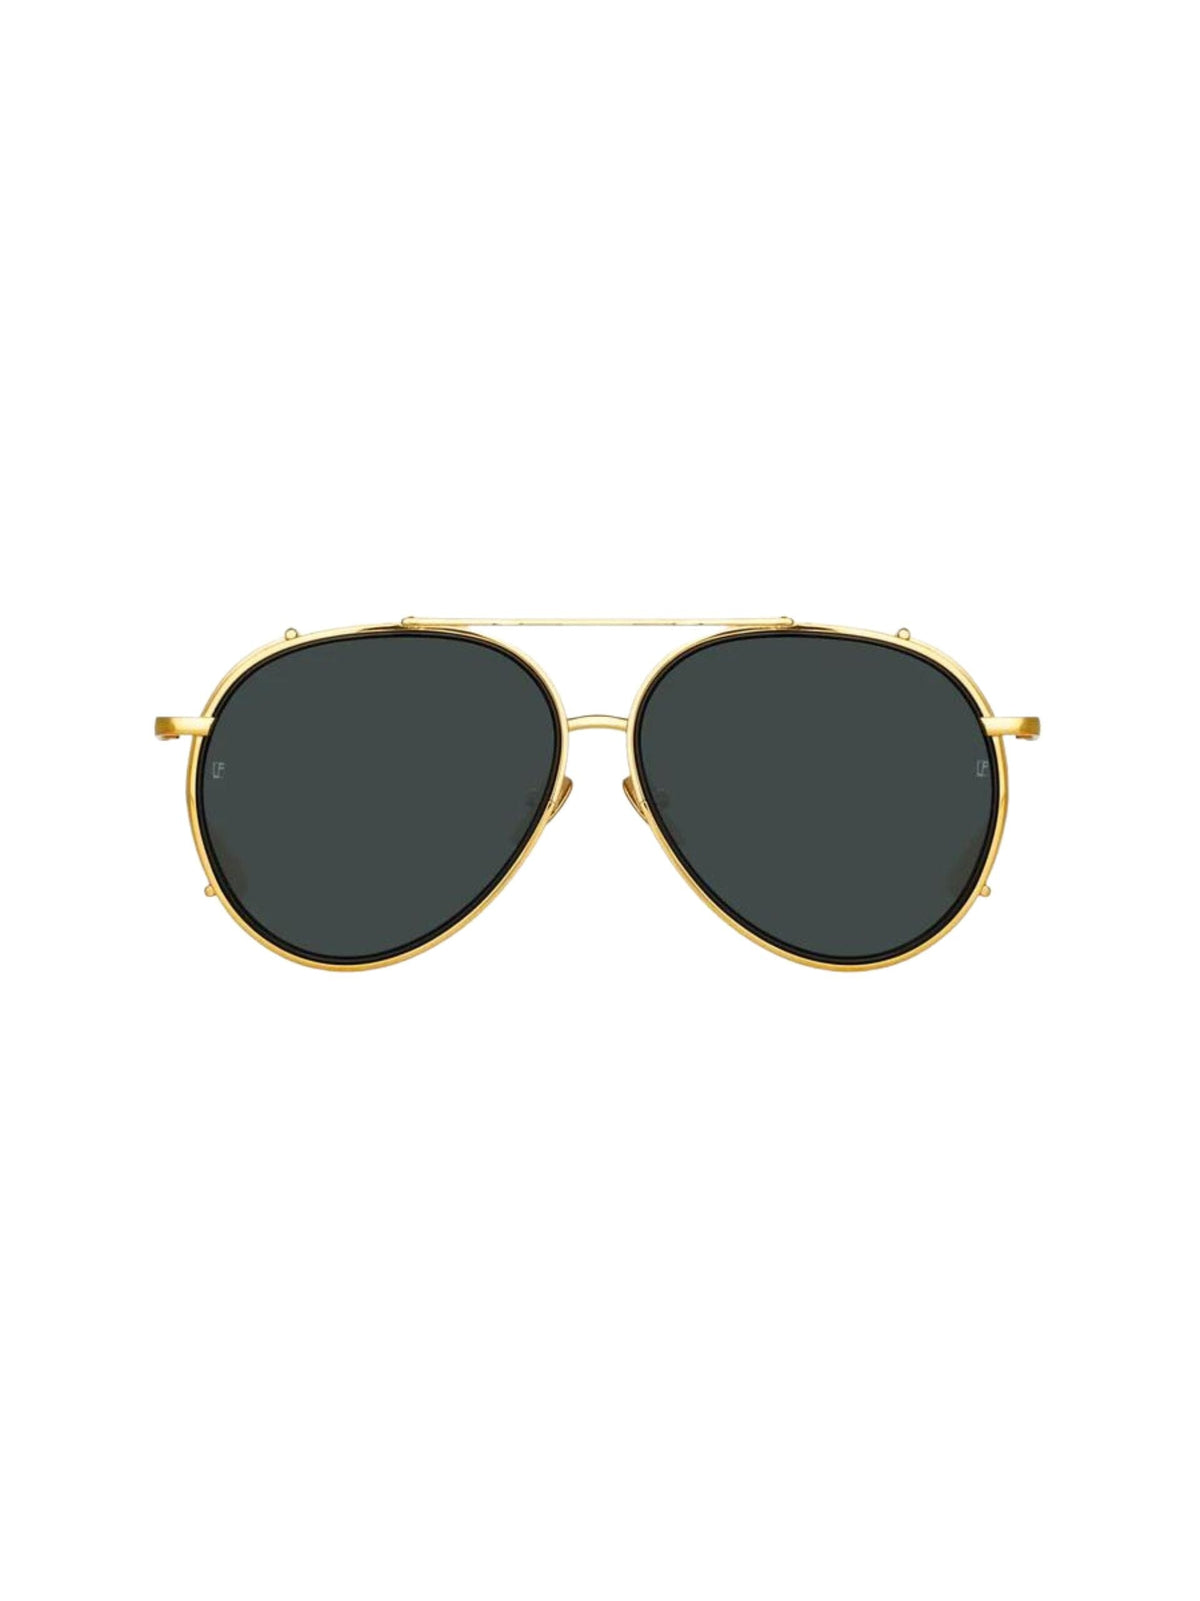 Torino Aviator Sunglasses / Yellow Gold Womens Linda Farrow 